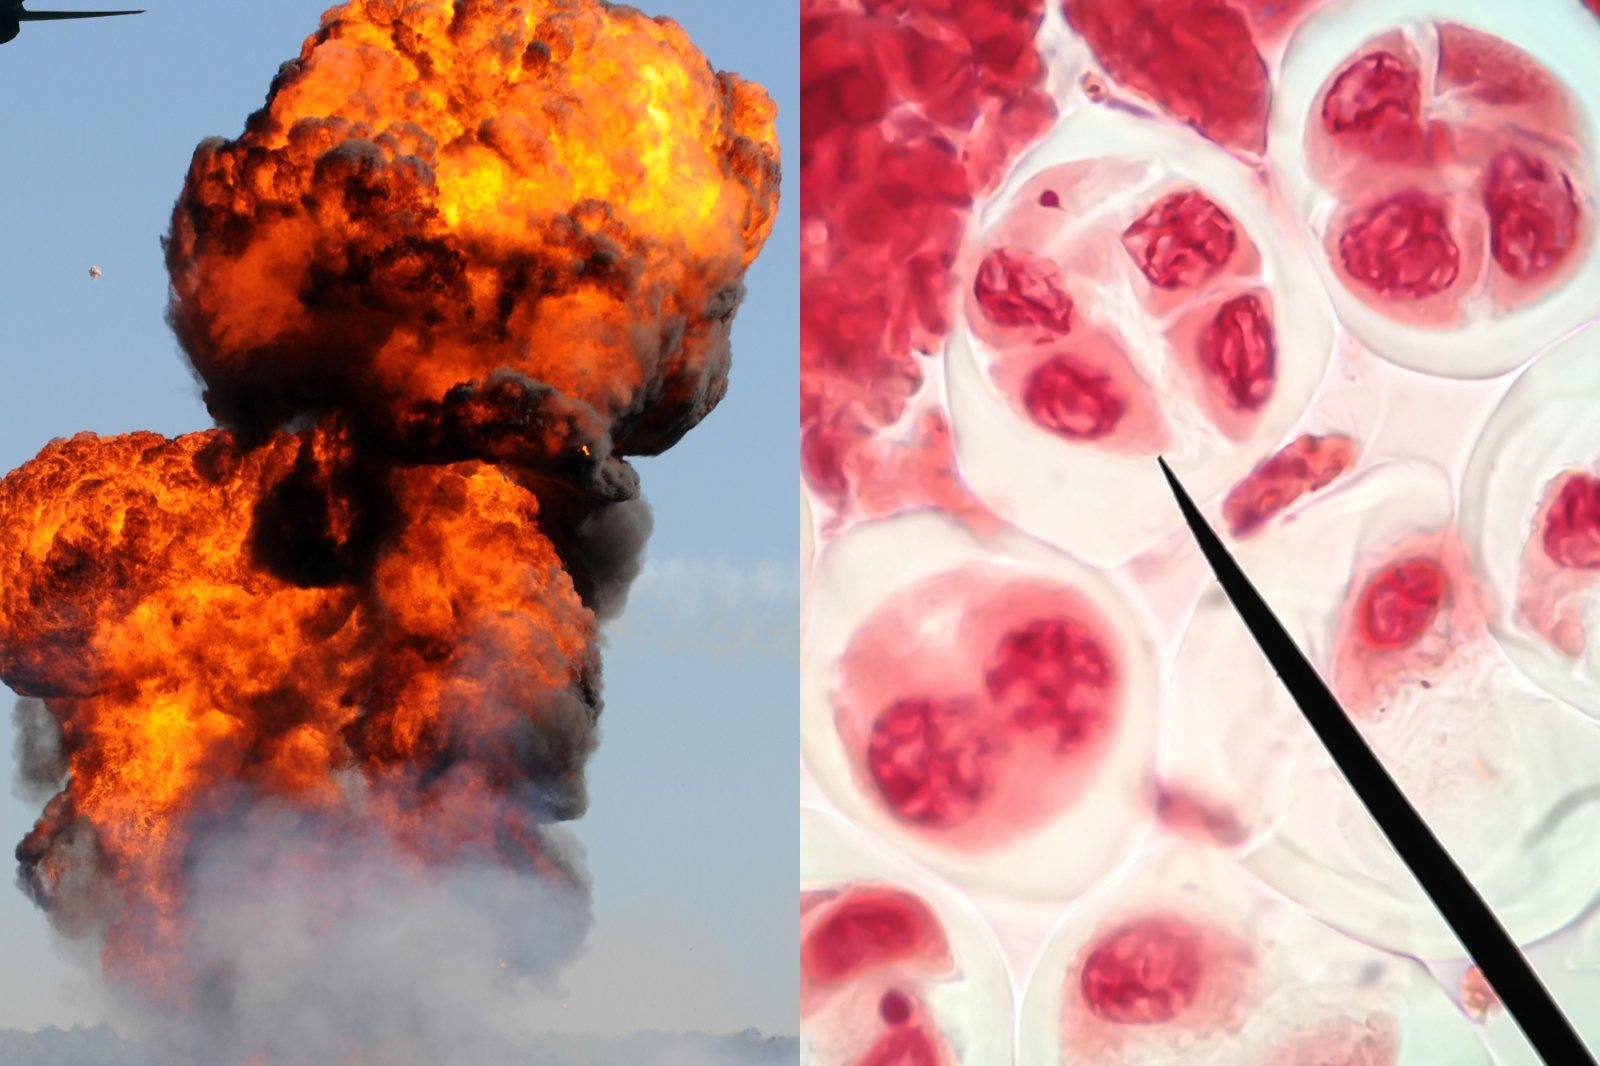 Forskere advarer om de ødeleggende effektene av krig: spredning av giftige stoffer TNT og RDX vil forårsake ikke bare kreft, men også genetiske mutasjoner